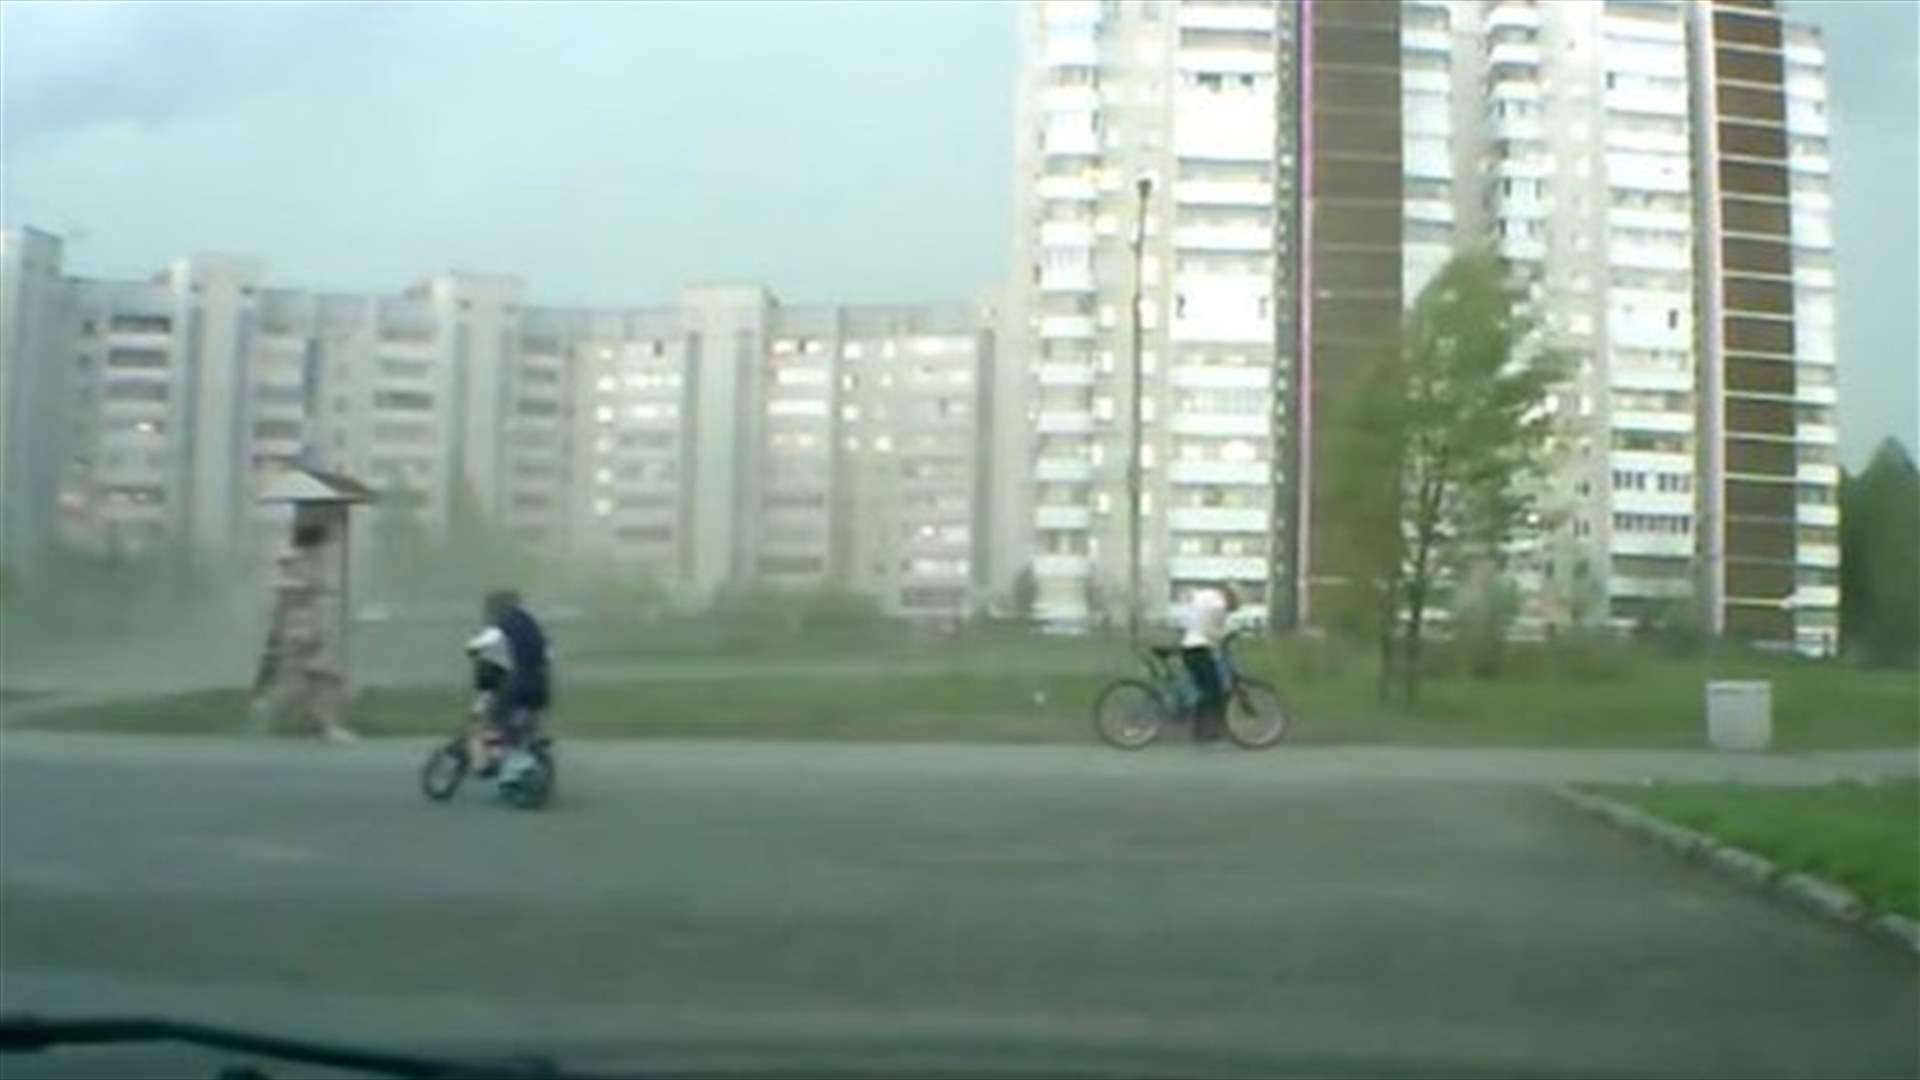 بالفيديو:الرياح الشديدة توقع طفلاً عن دراجته!